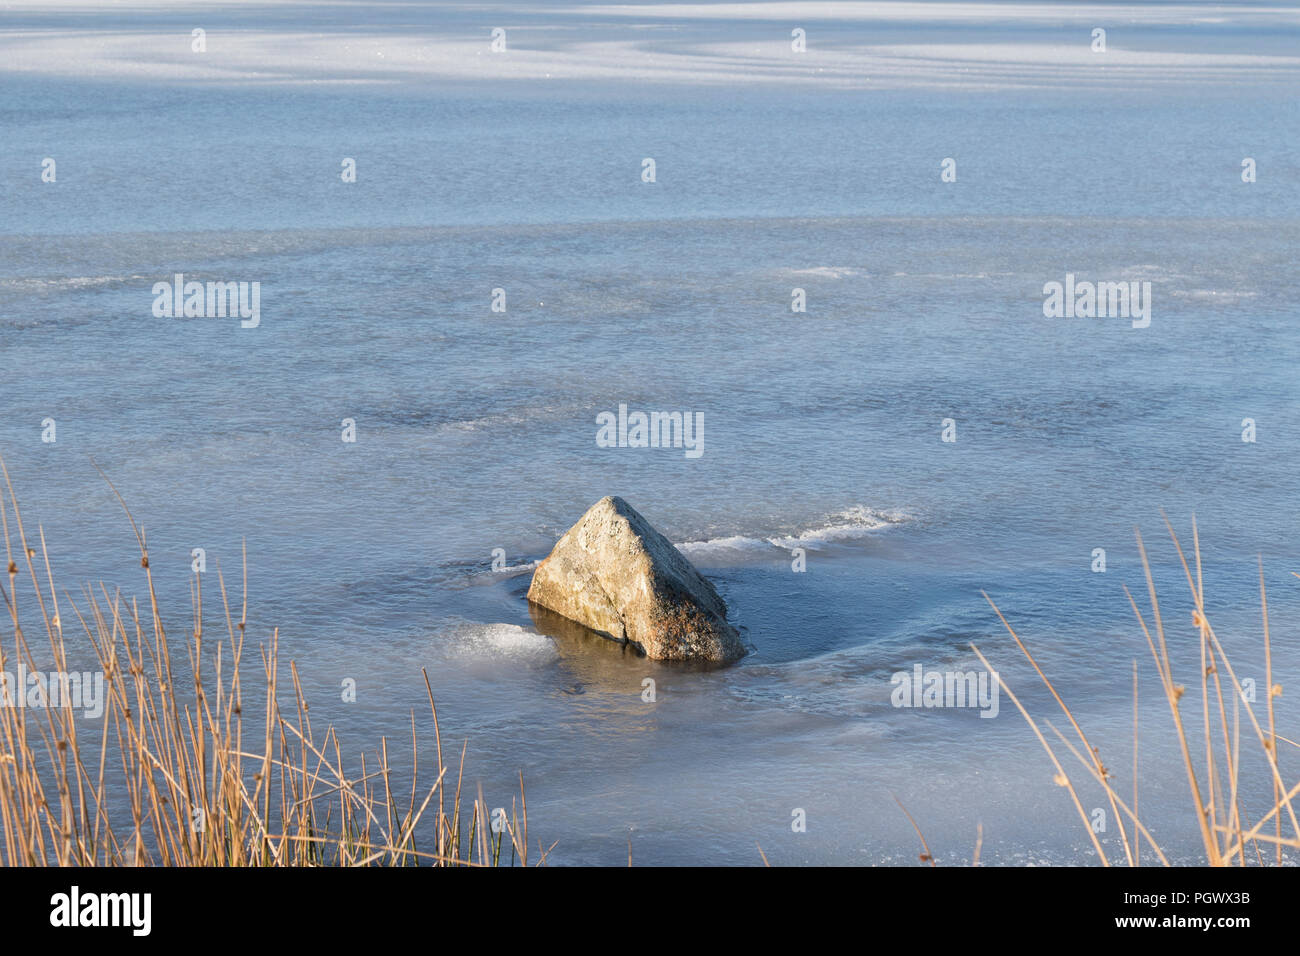 Rock in frozen loch Stock Photo